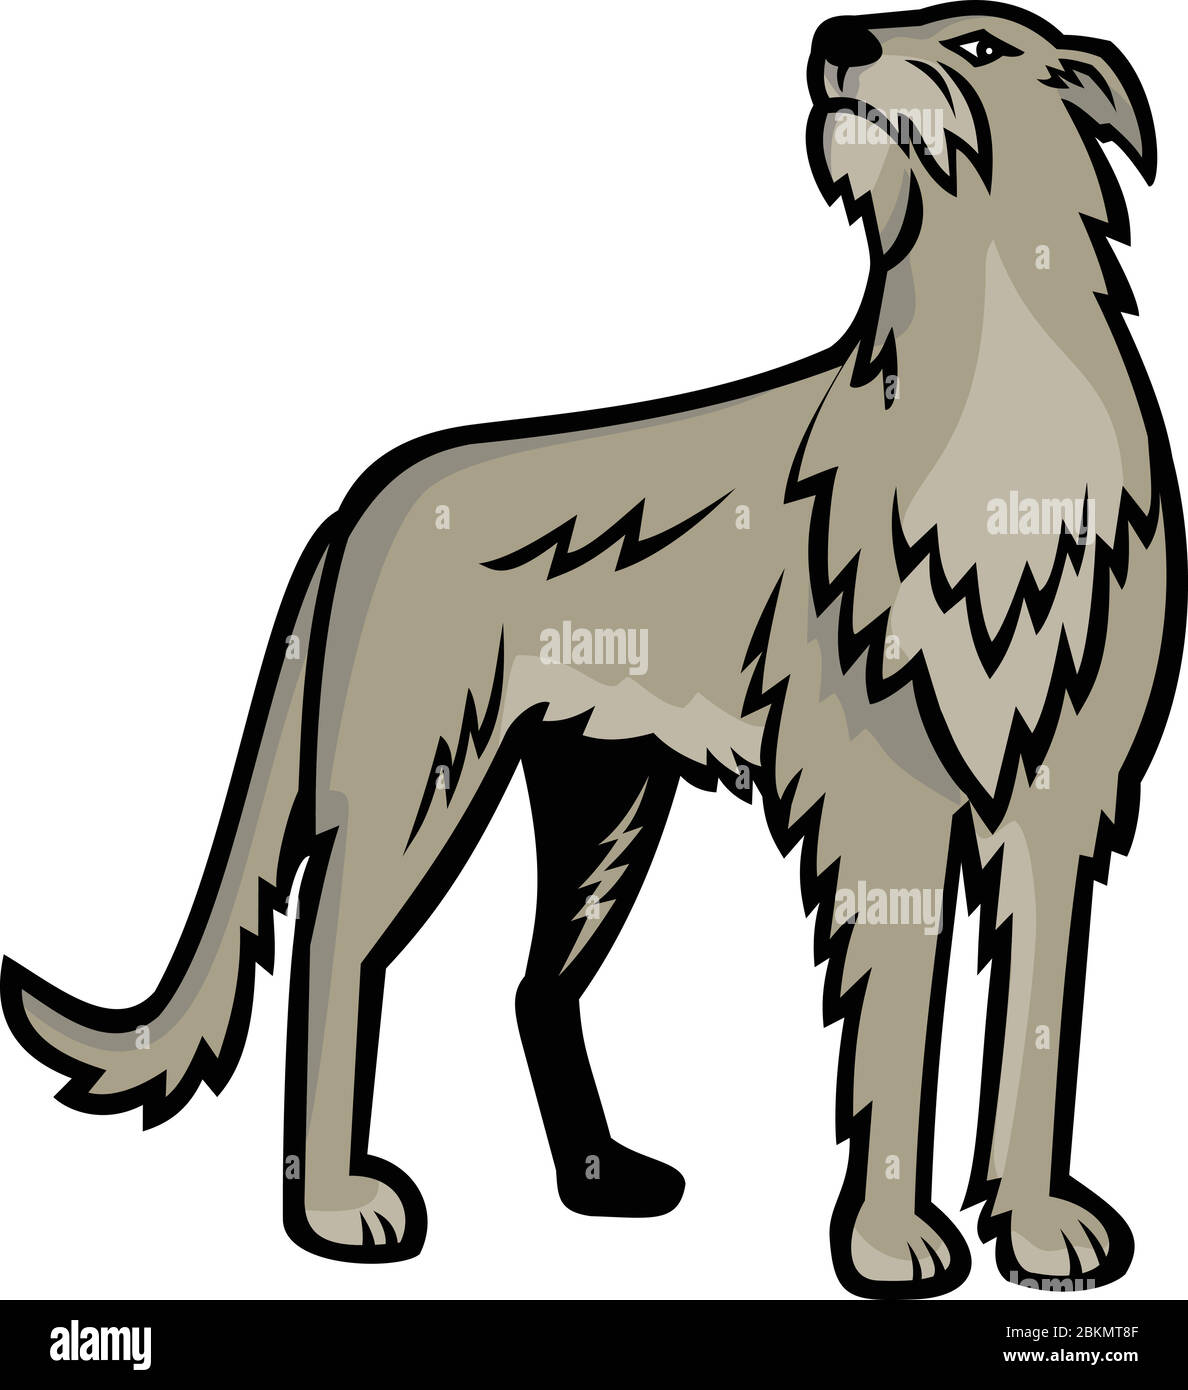 Illustrazione dell'icona della mascotte sportiva di Deerhound scozzese o del Deerhound, una grande razza di tumulo allevato per la caccia di cervi rossi visto di fronte su isolato Illustrazione Vettoriale